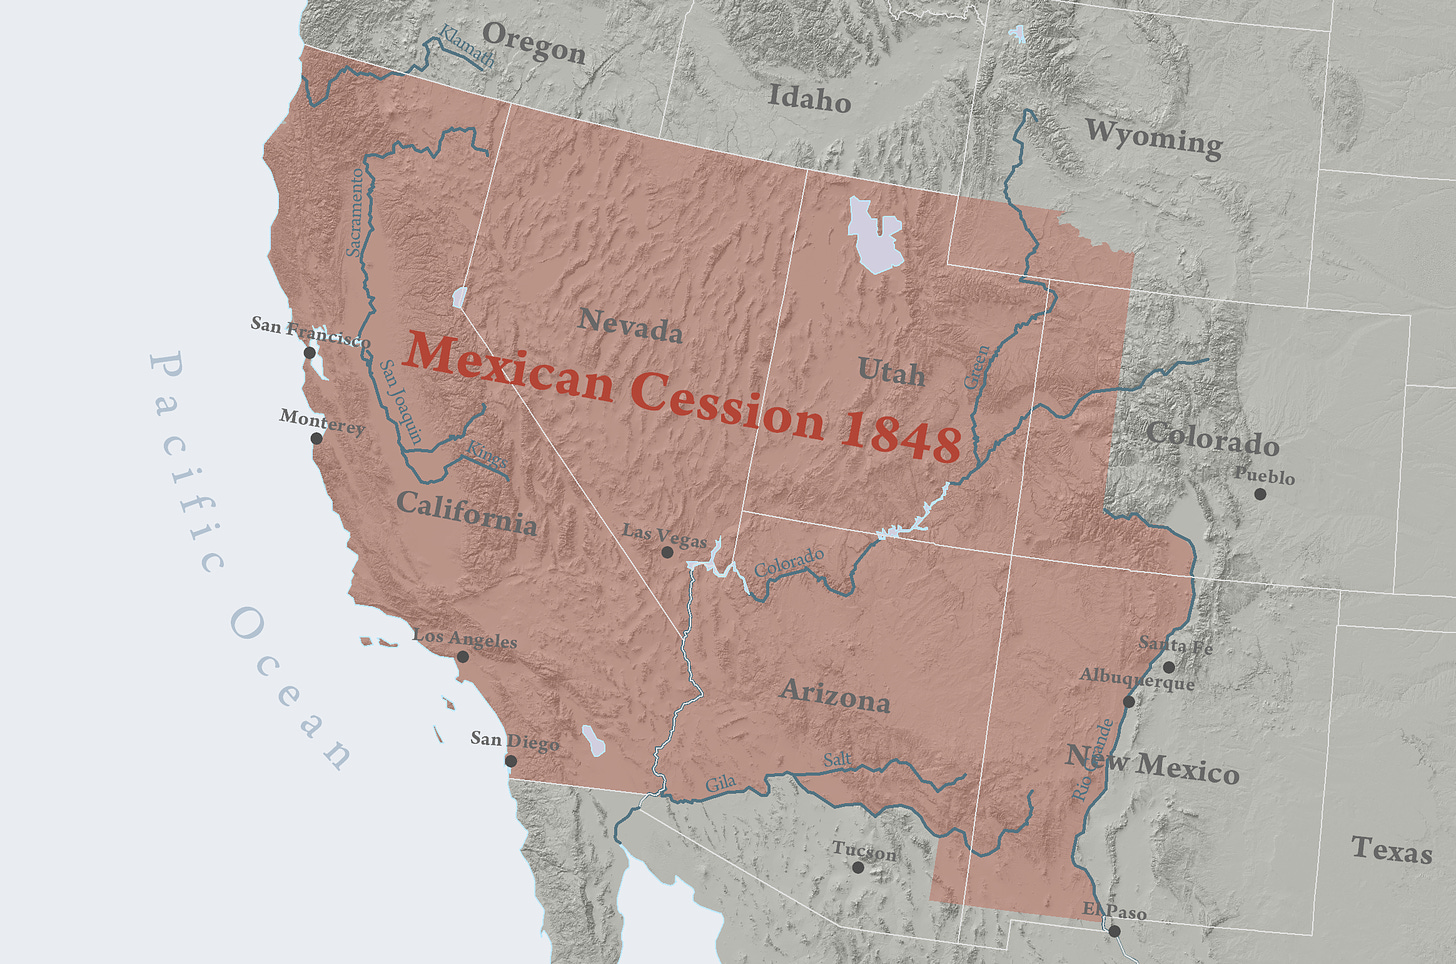 Mexican Cession - Wikipedia